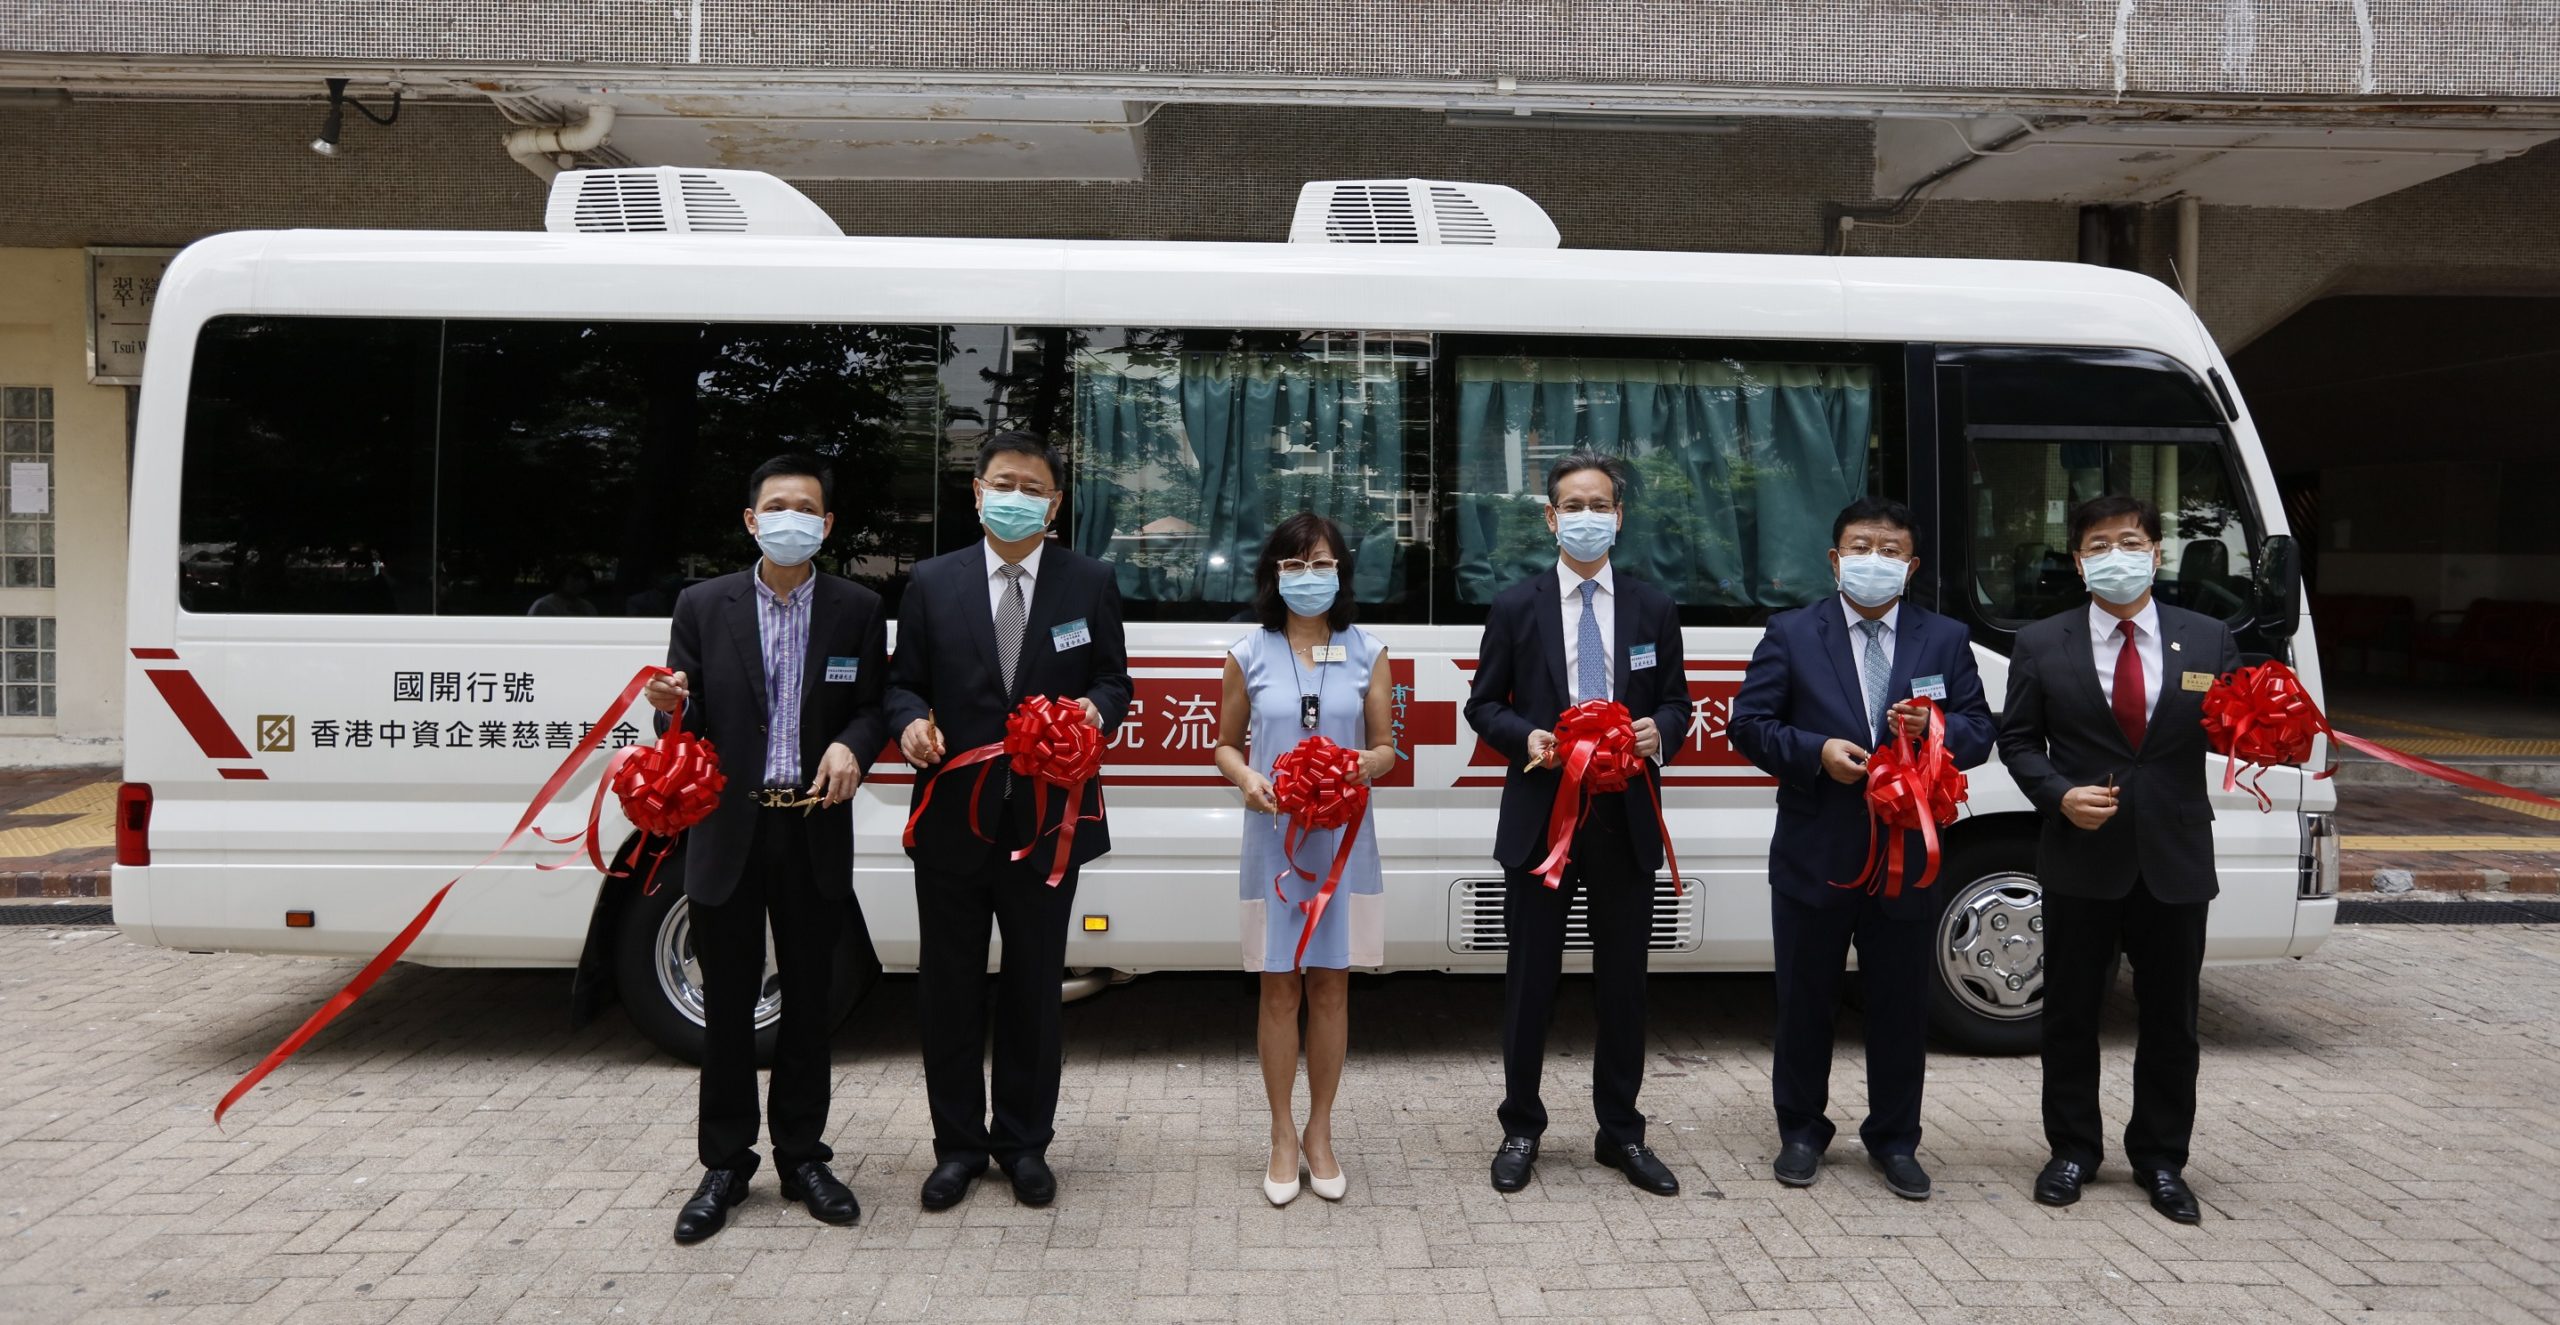 博愛醫院獲香港中資企業慈善基金捐款港幣$109萬元 購置中醫專科醫療車 針對常見都市病 提供專病專治診療